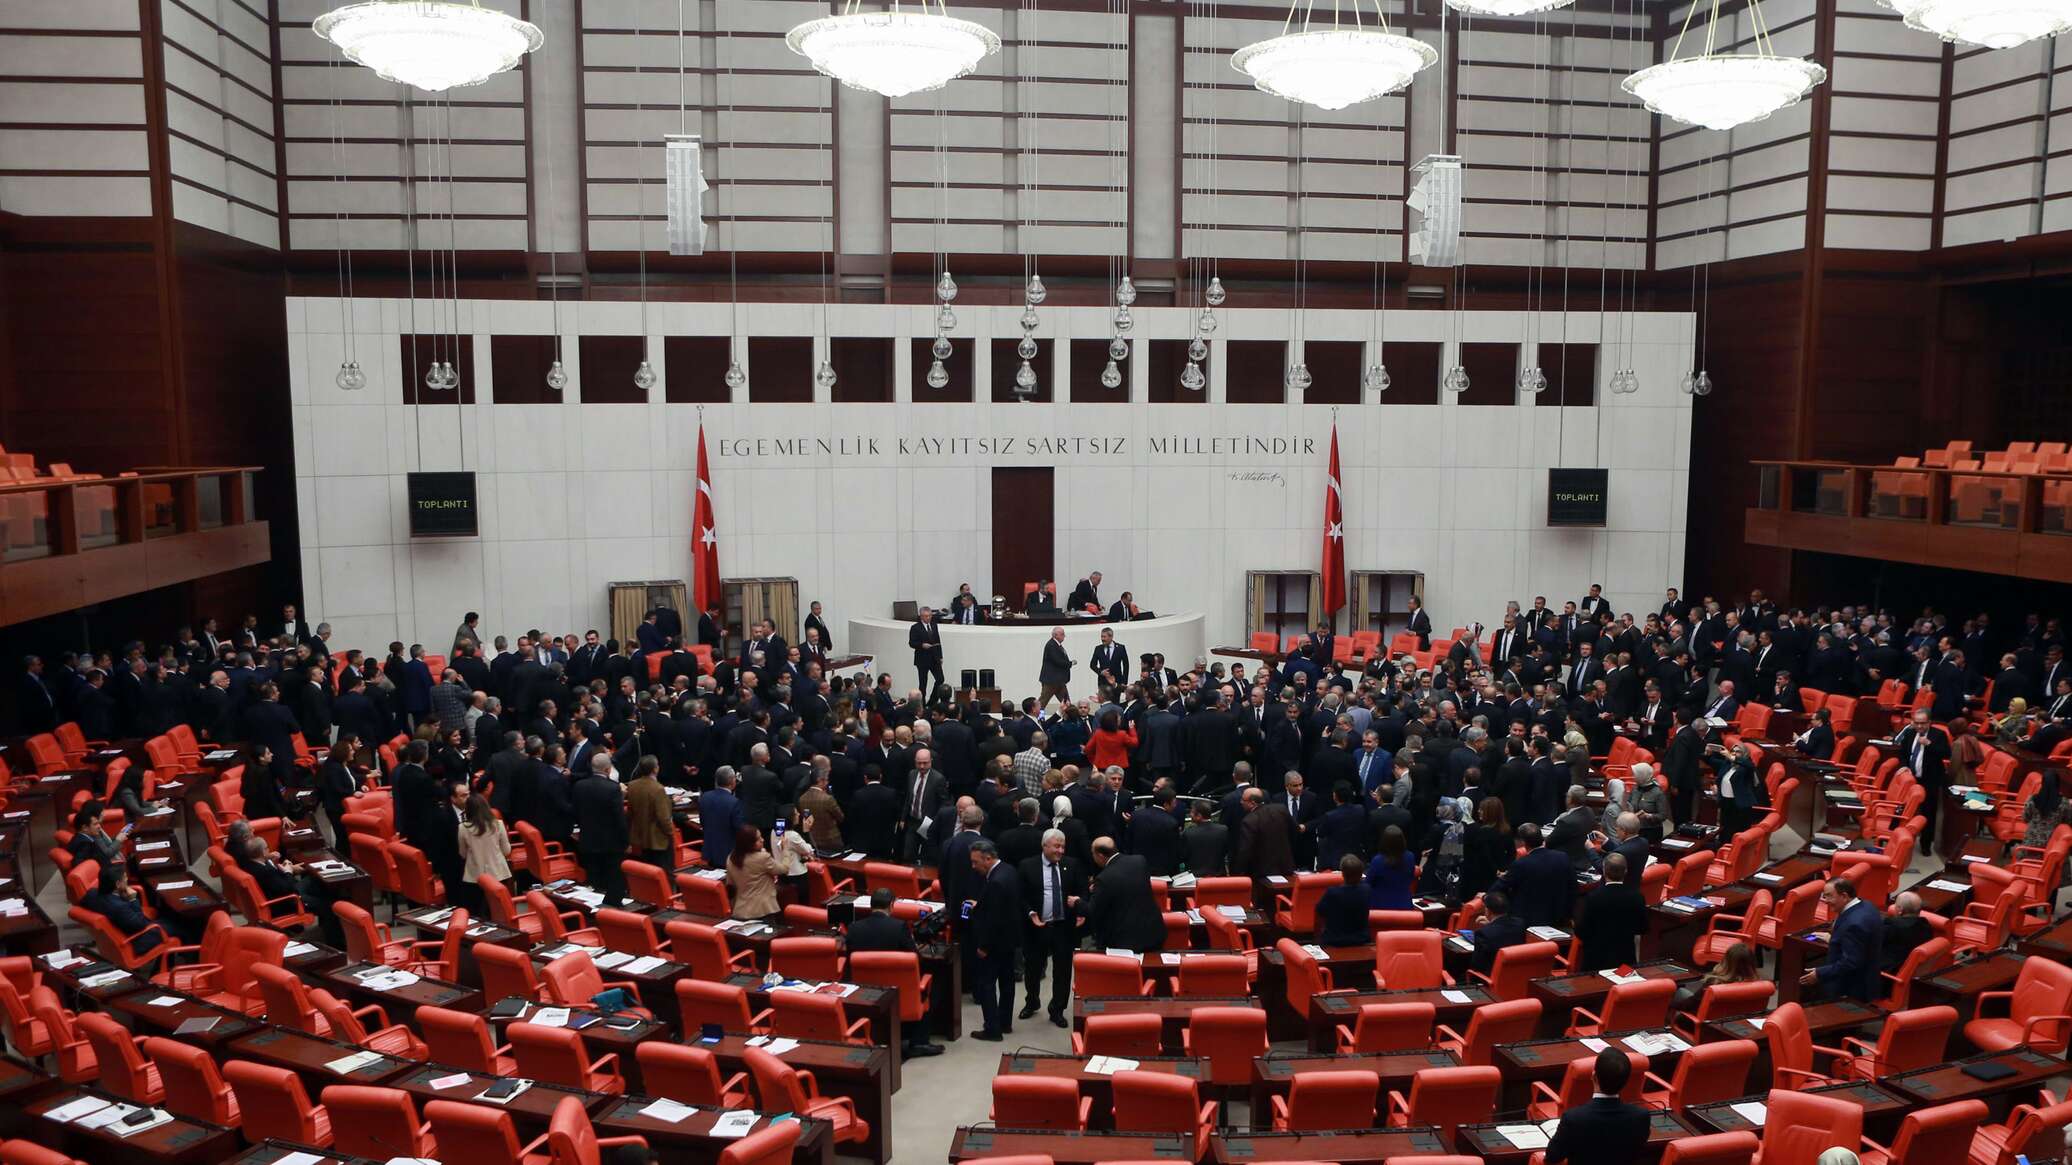 دعوات في البرلمان التركي للانسحاب من الناتو